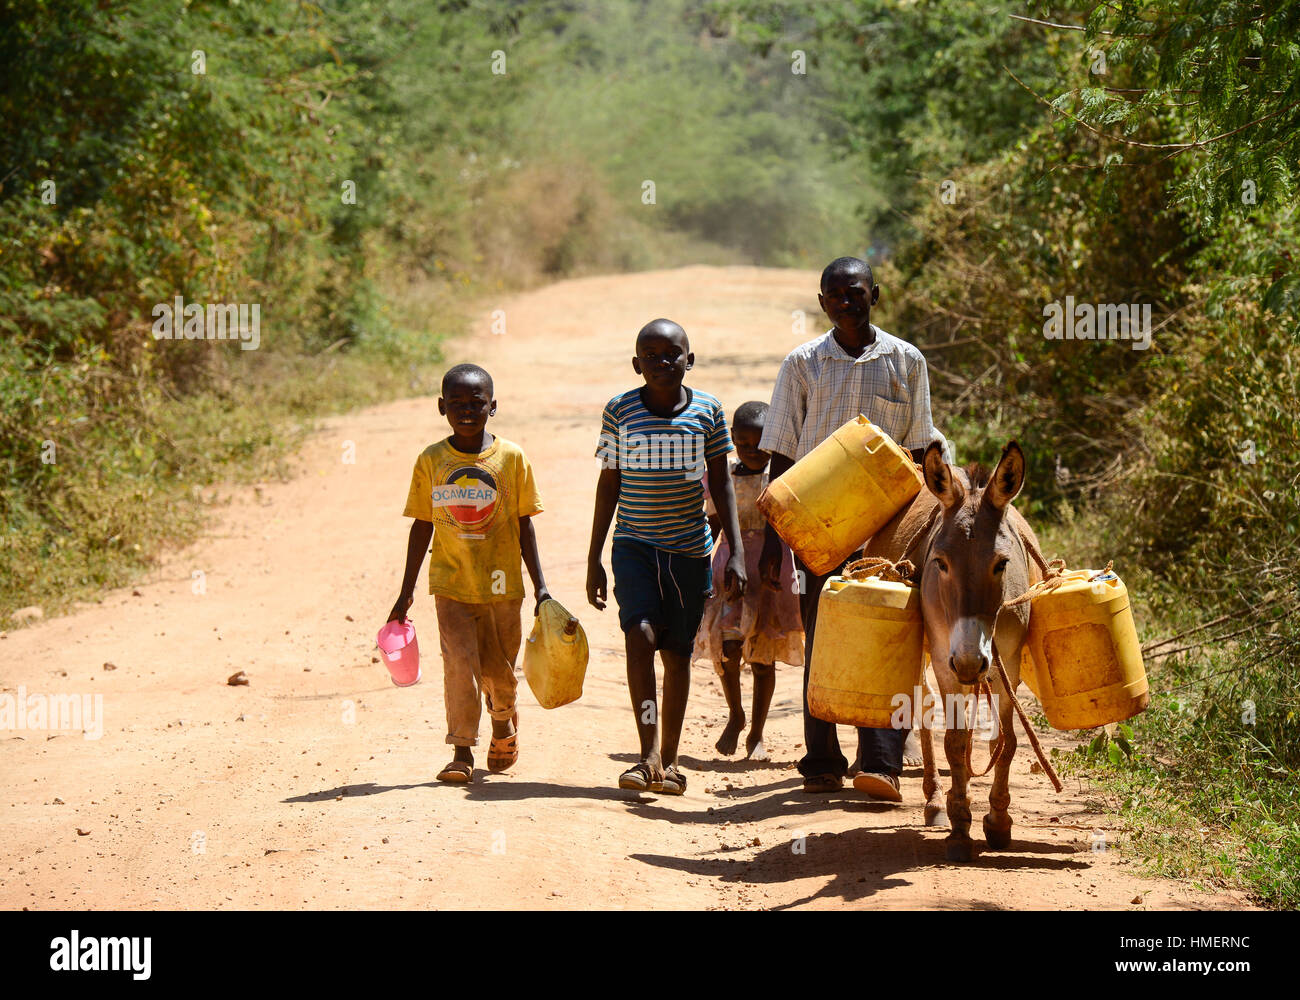 KENIA, Mount Kenia Osten, extreme Dürre wegen Mangel an Regen verursachte massive Wasserprobleme, Dorfbewohner Transport Wasser mit Eseln über große Entfernungen Stockfoto